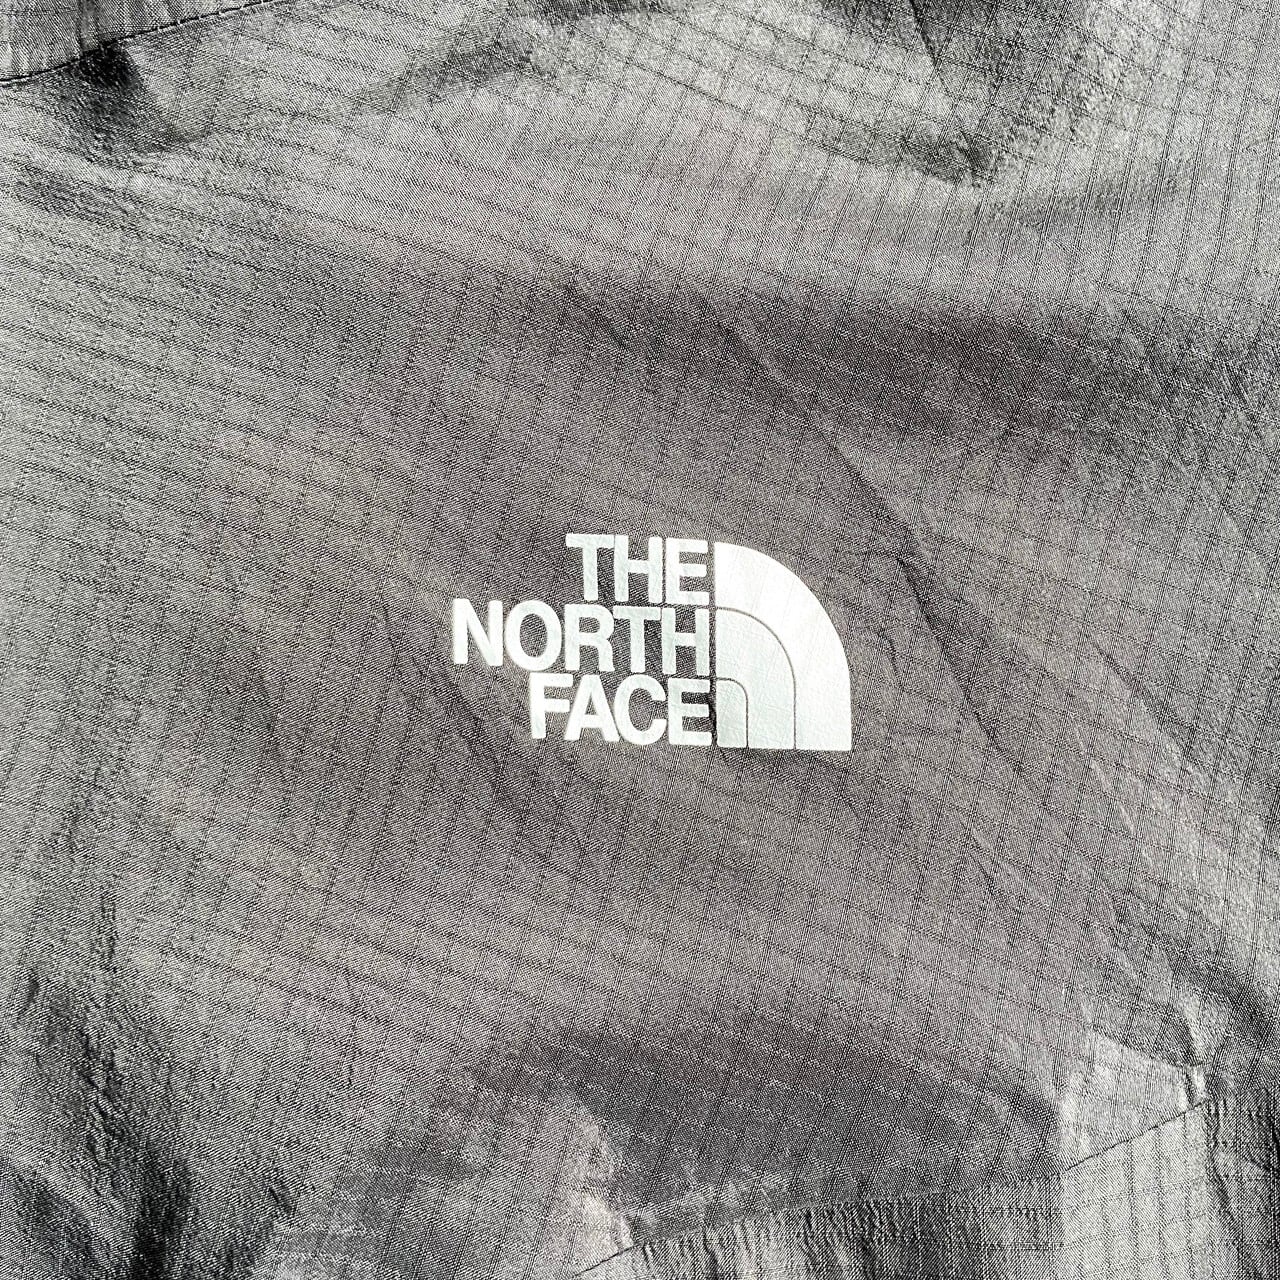 THE NORTH FACE ザ ノースフェイス SUMMIT SERIES GORE-TEX マウンテン